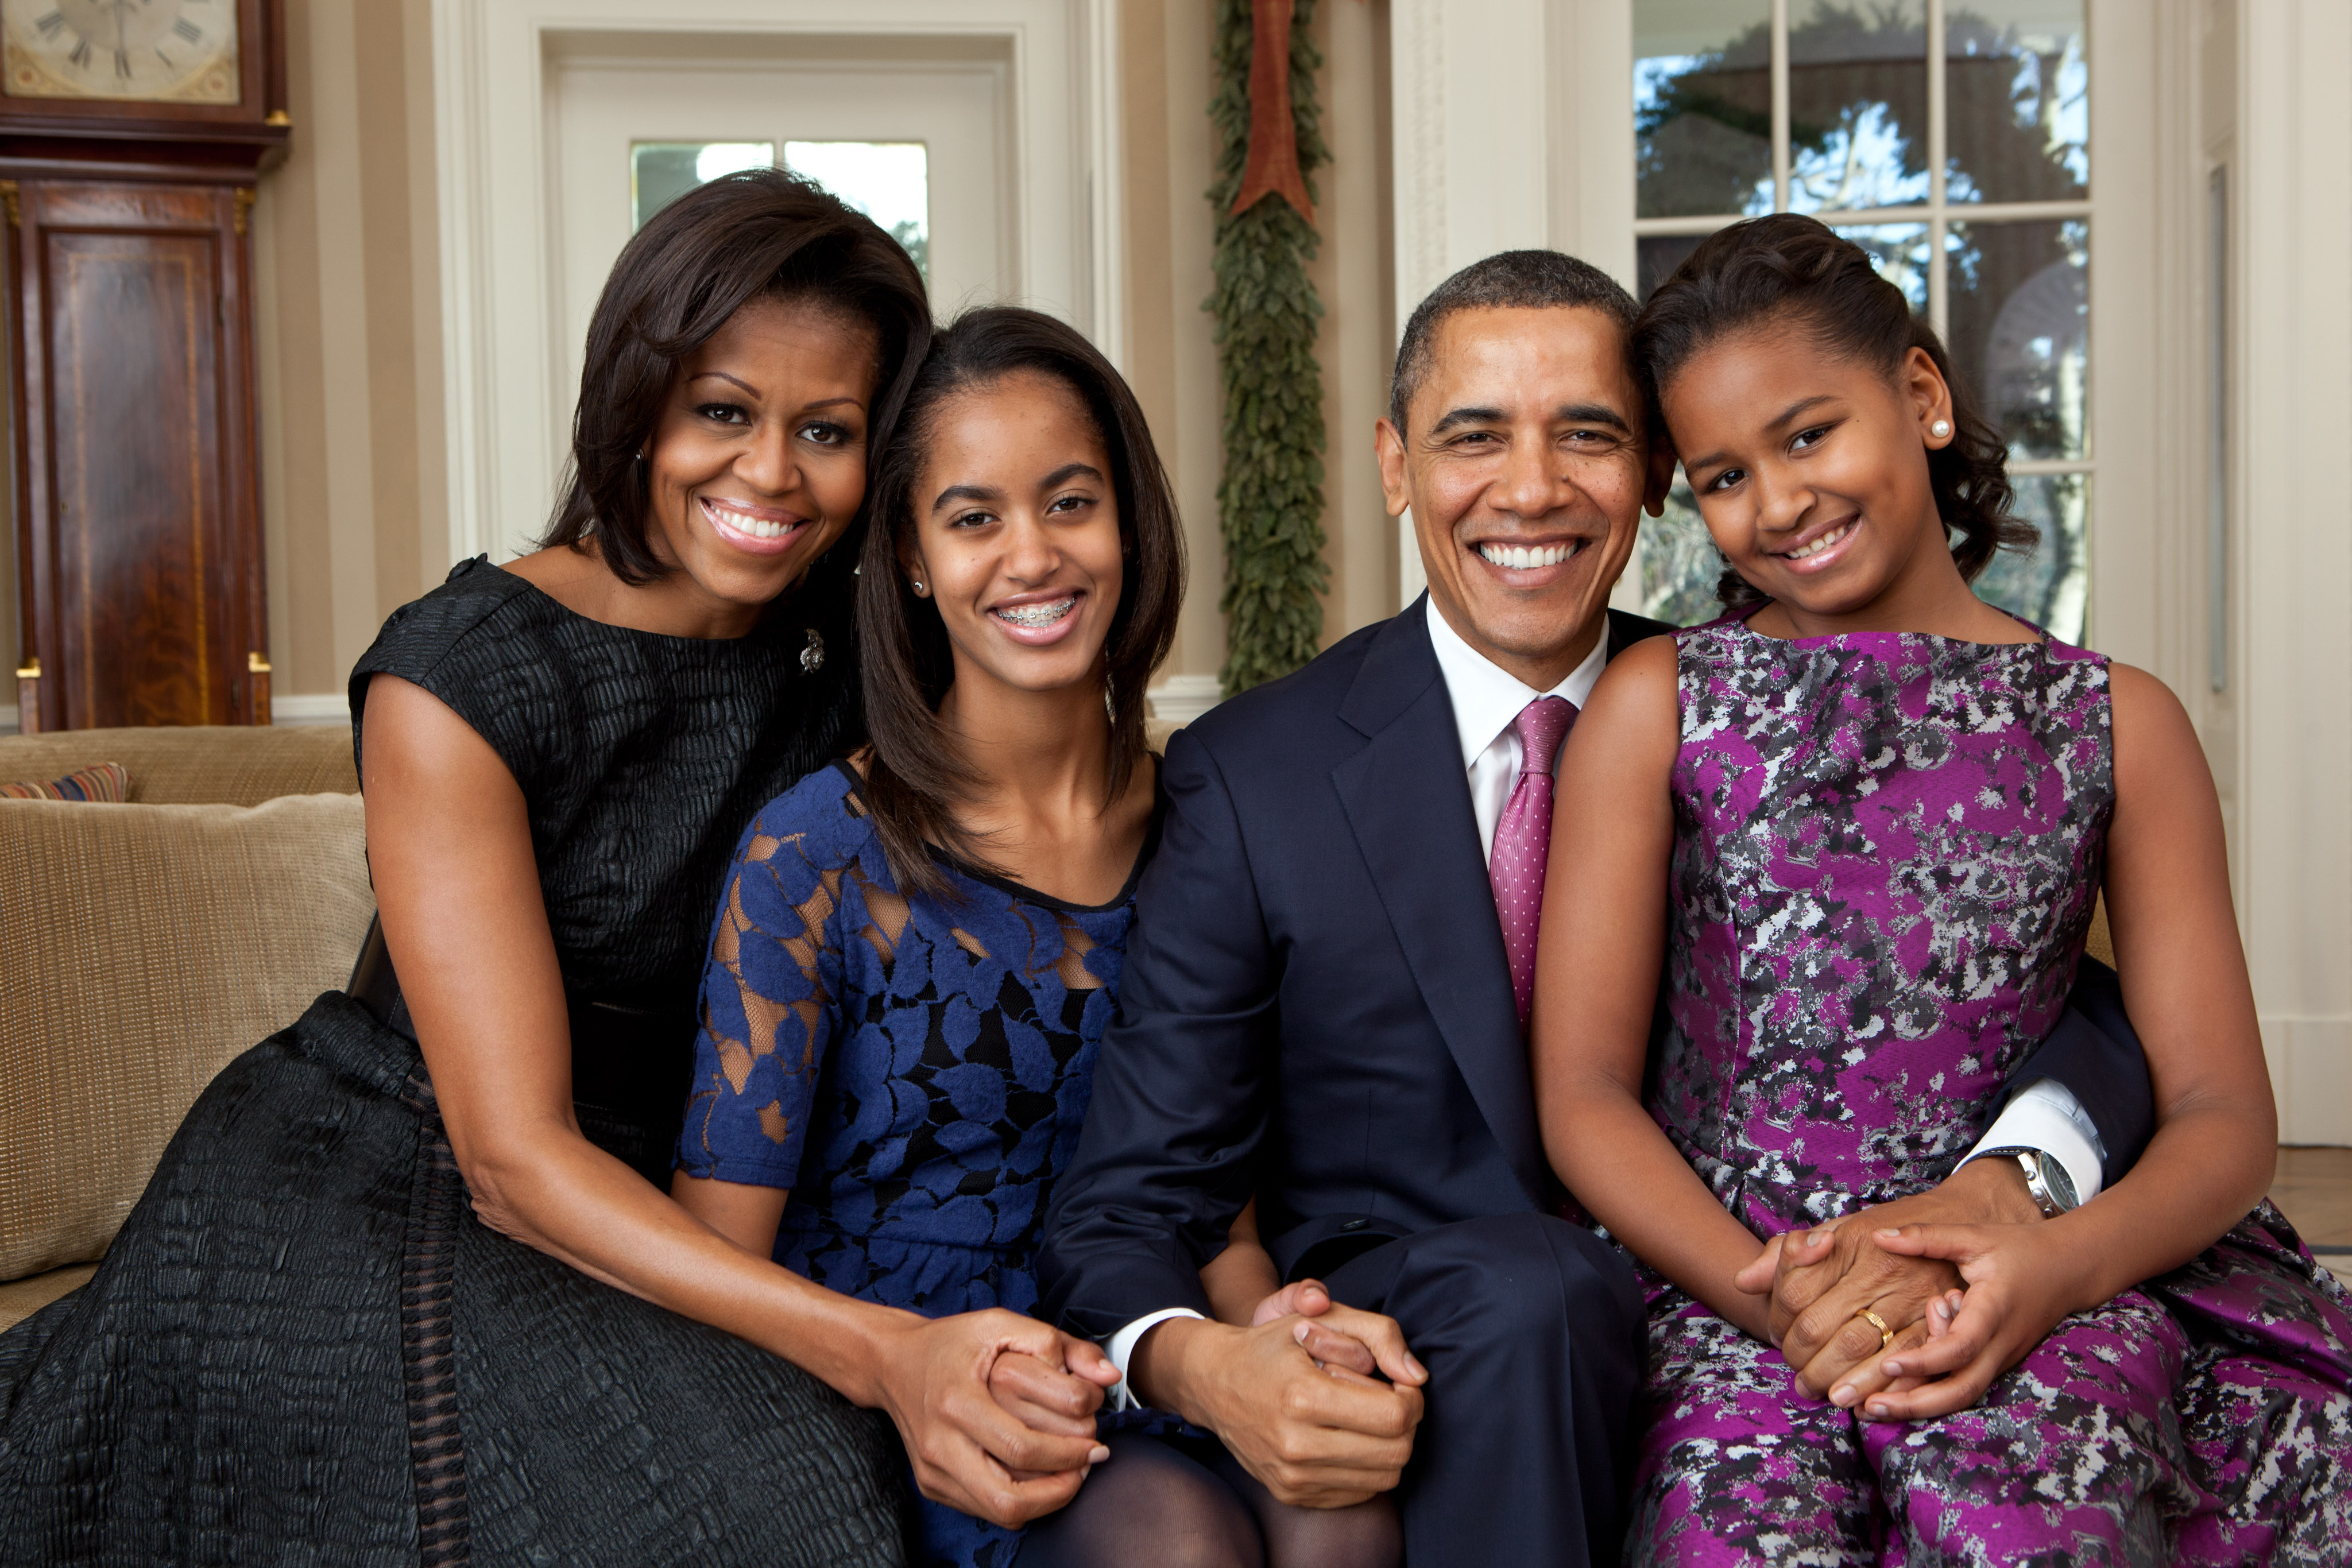 Malia and Sasha - Daughters of Barack and Michelle Obama